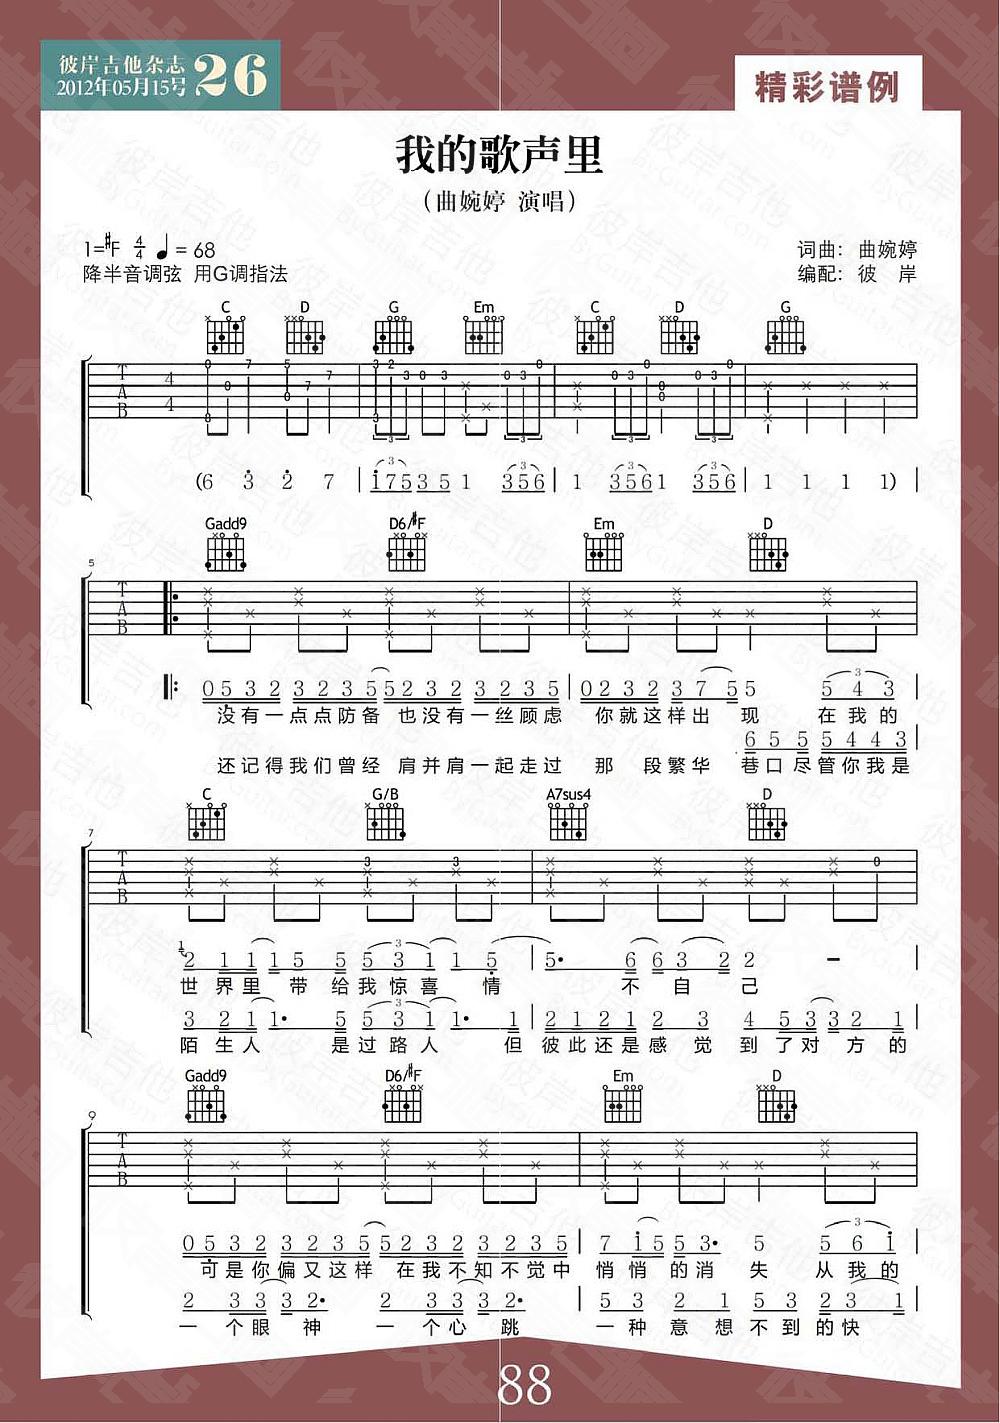 我的歌声里的吉他谱 曲婉婷 - 彼岸吉他中国第